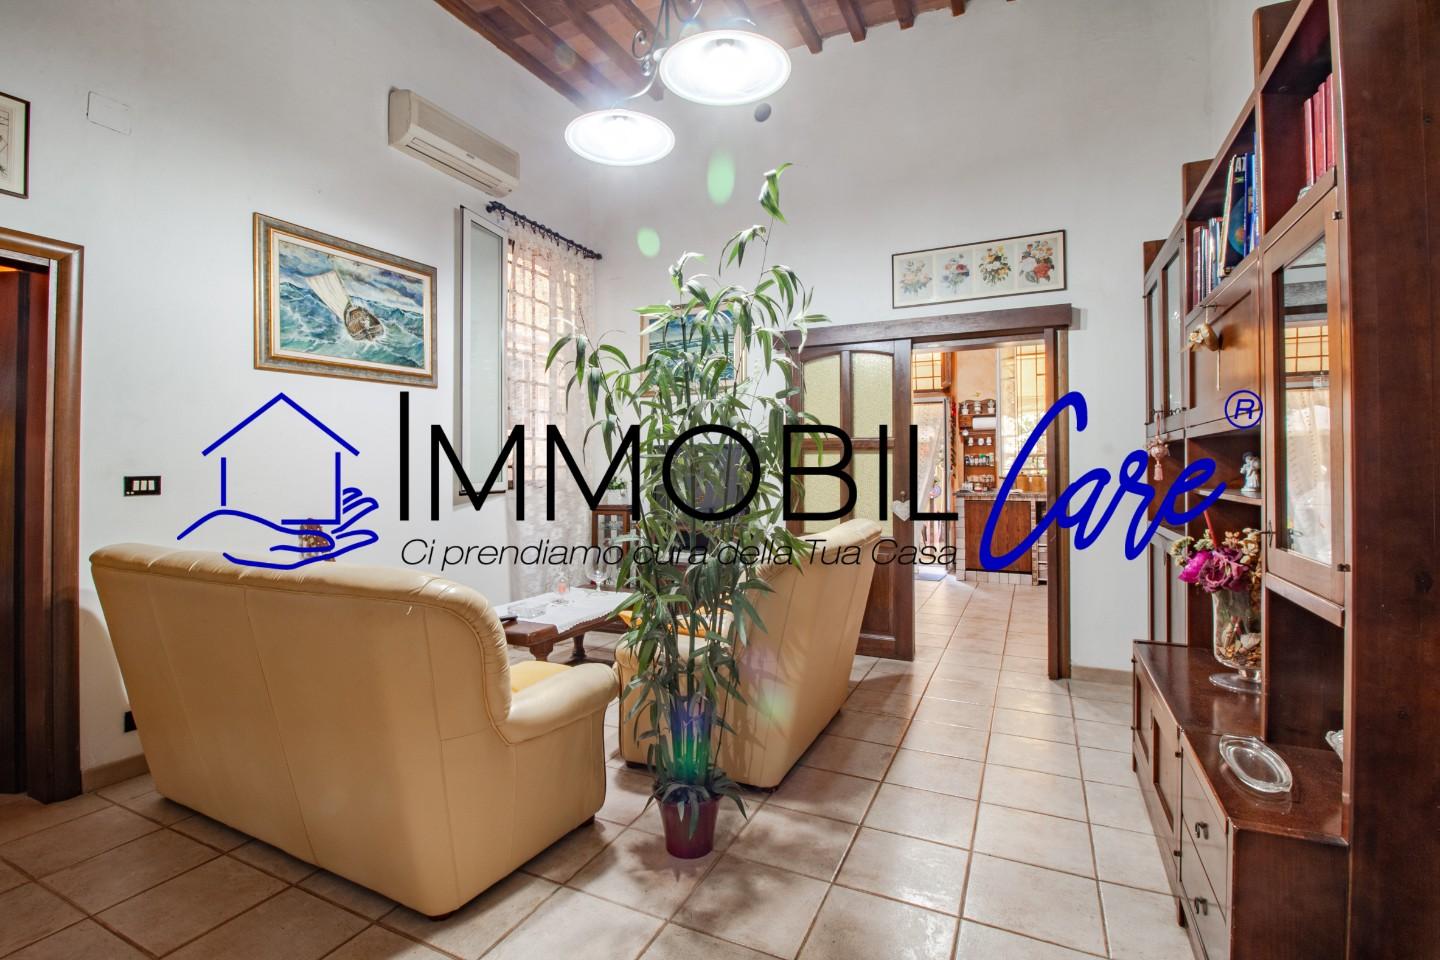 Appartamento in vendita a Livorno, 4 locali, prezzo € 100.000 | PortaleAgenzieImmobiliari.it